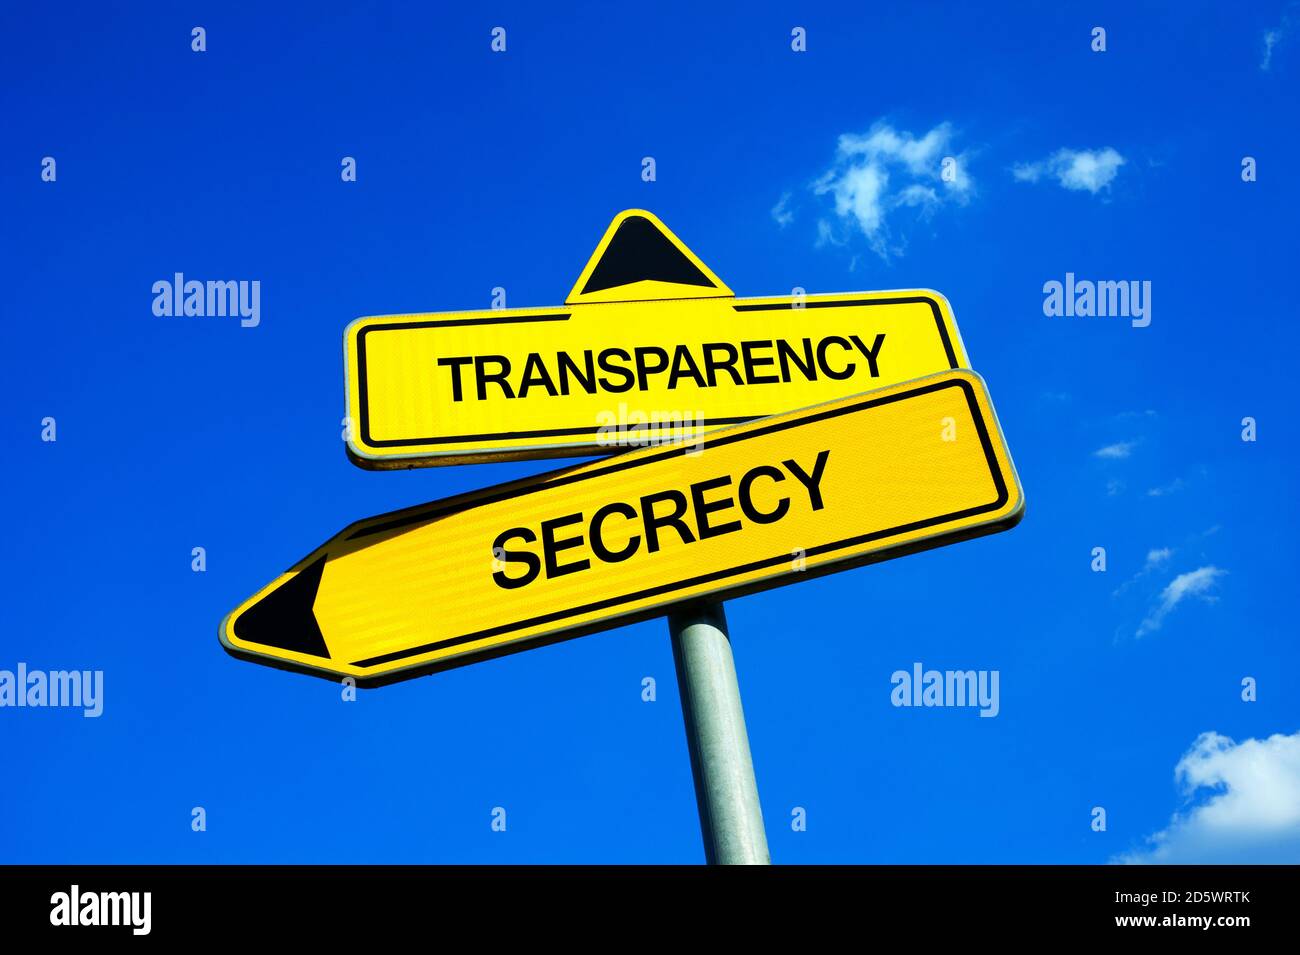 Transparence contre secret - signalisation routière avec deux options - garder secret sur les informations importantes ou être transparent. Prévention contre la corruption Banque D'Images